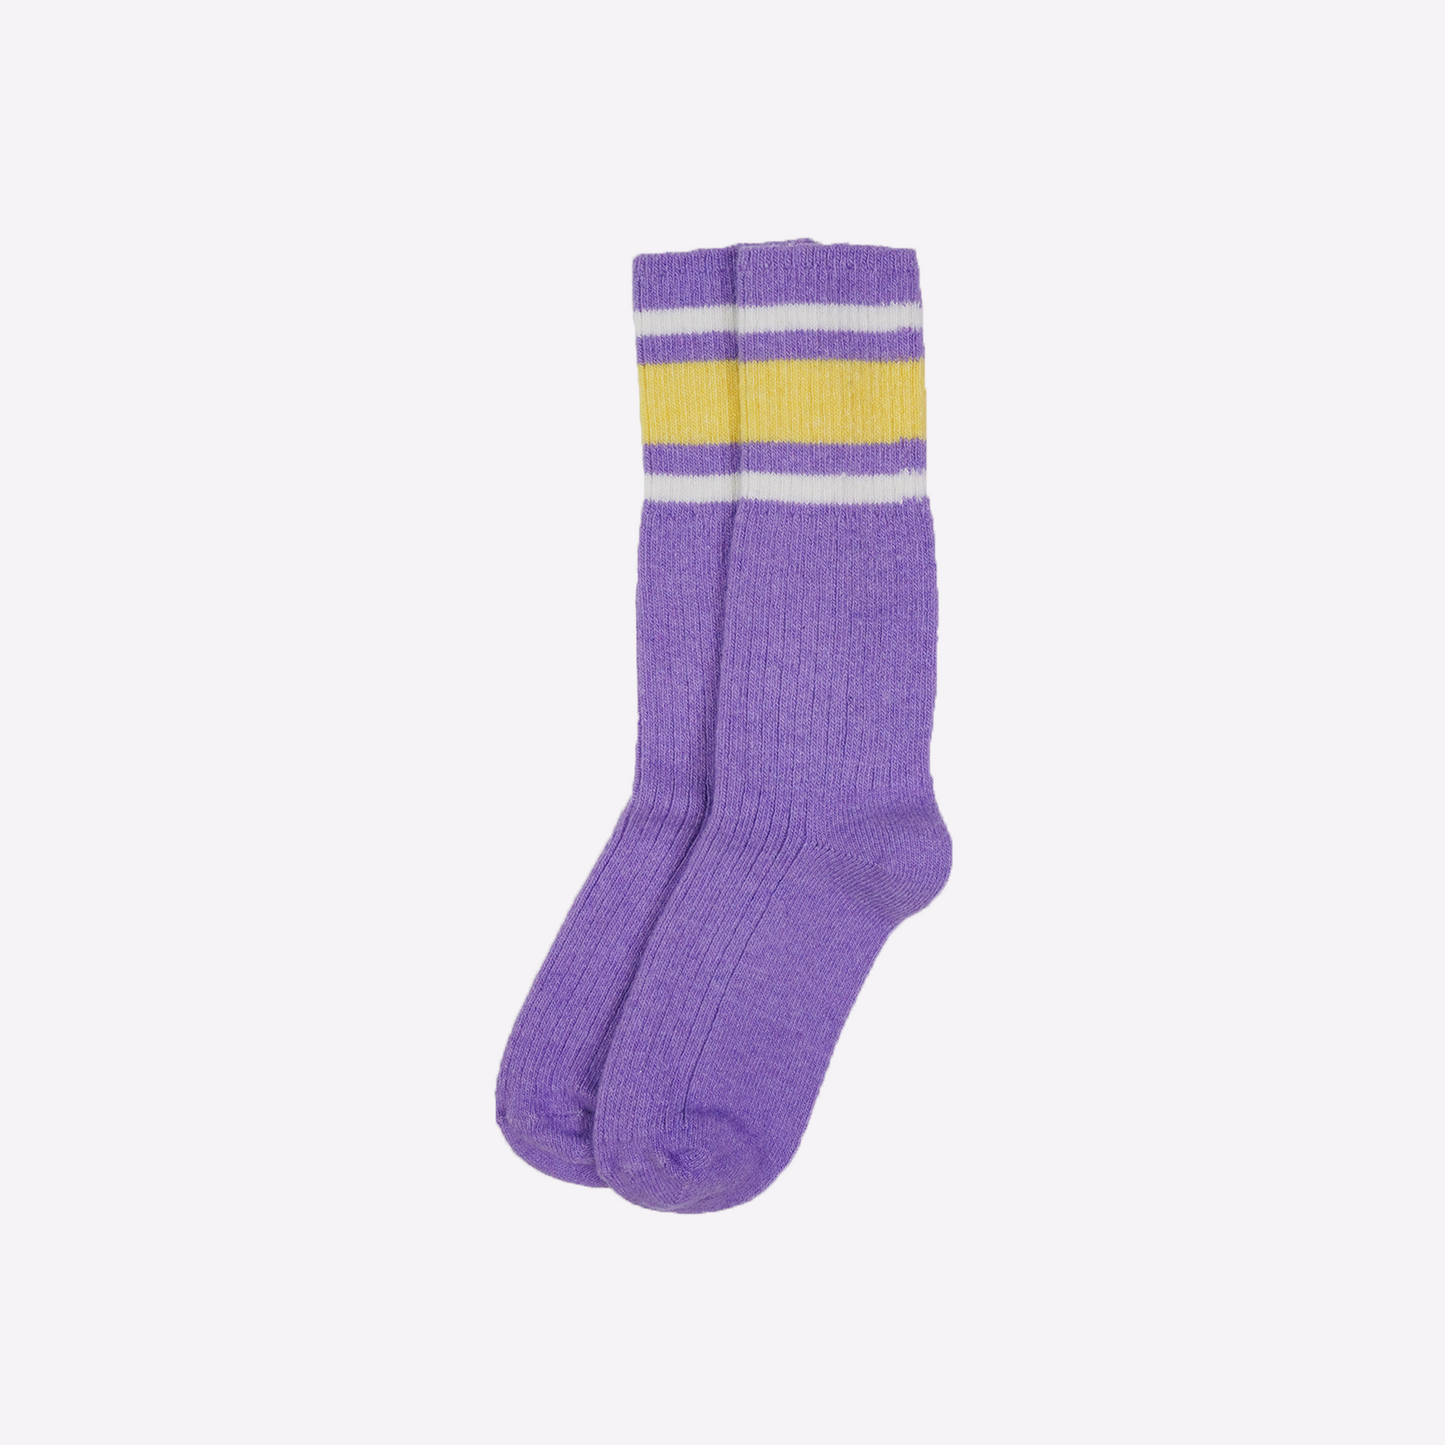 Striped Socks in Lavender